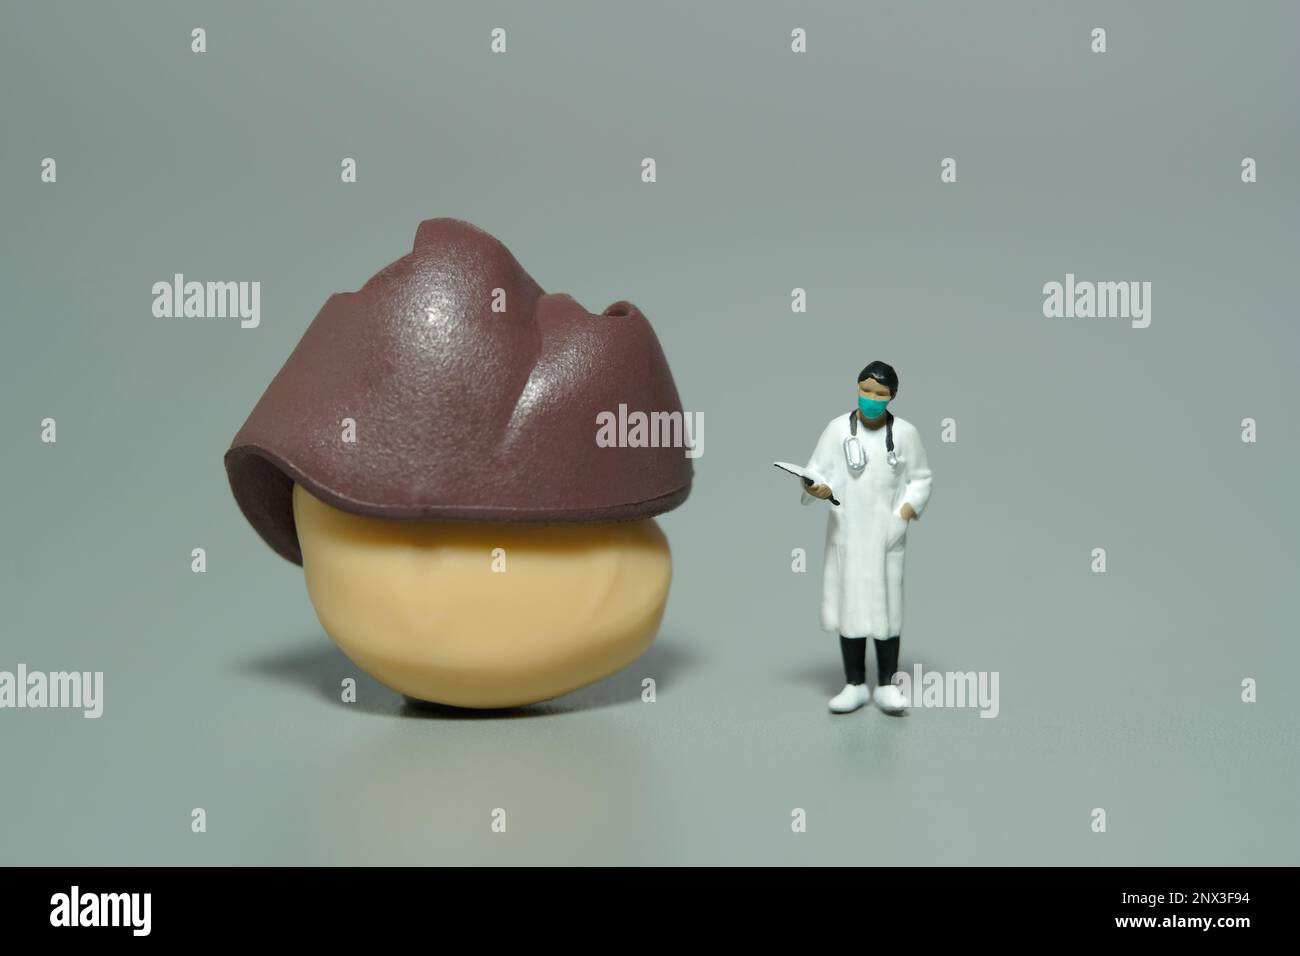 Miniatur-Menschen-Spielzeug-Figuren-Fotografie. Eine Ärztin, die vor Leber- und Magenorganen steht. Isolierter grauer Hintergrund. Bildfoto Stockfoto